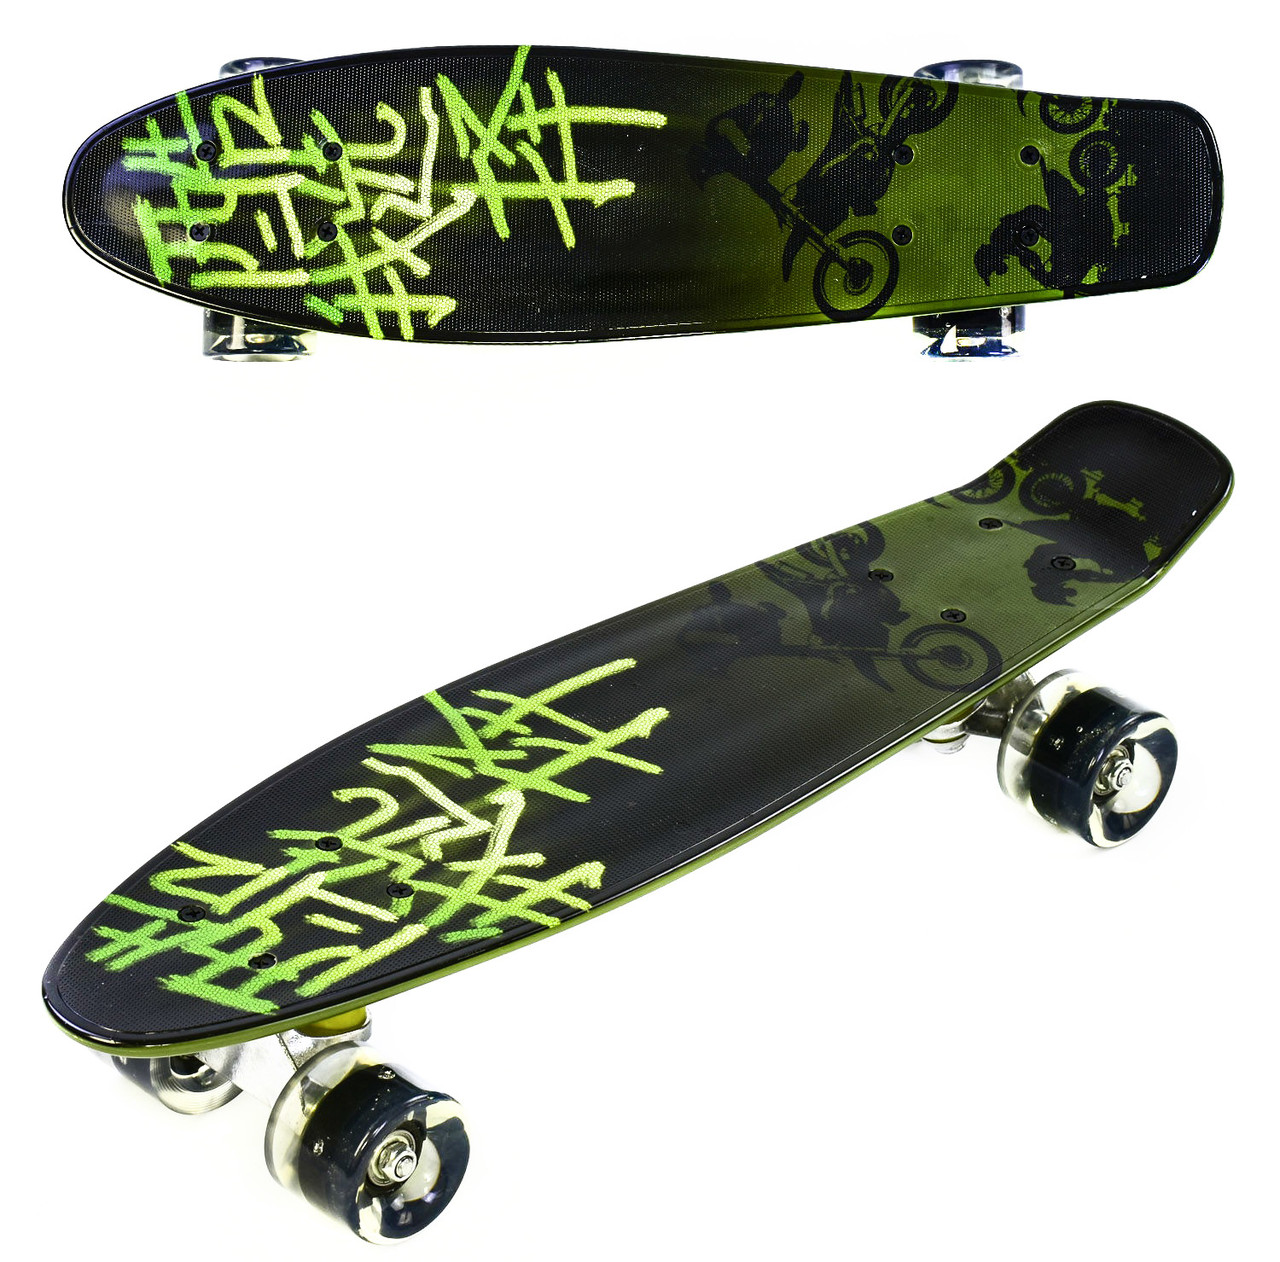 Пенни борд Print Graffiti! Колеса мягкие! Скейт, Penny Board.  Темно-зеленый, цена 499 грн. - Prom.ua (ID#886801461)